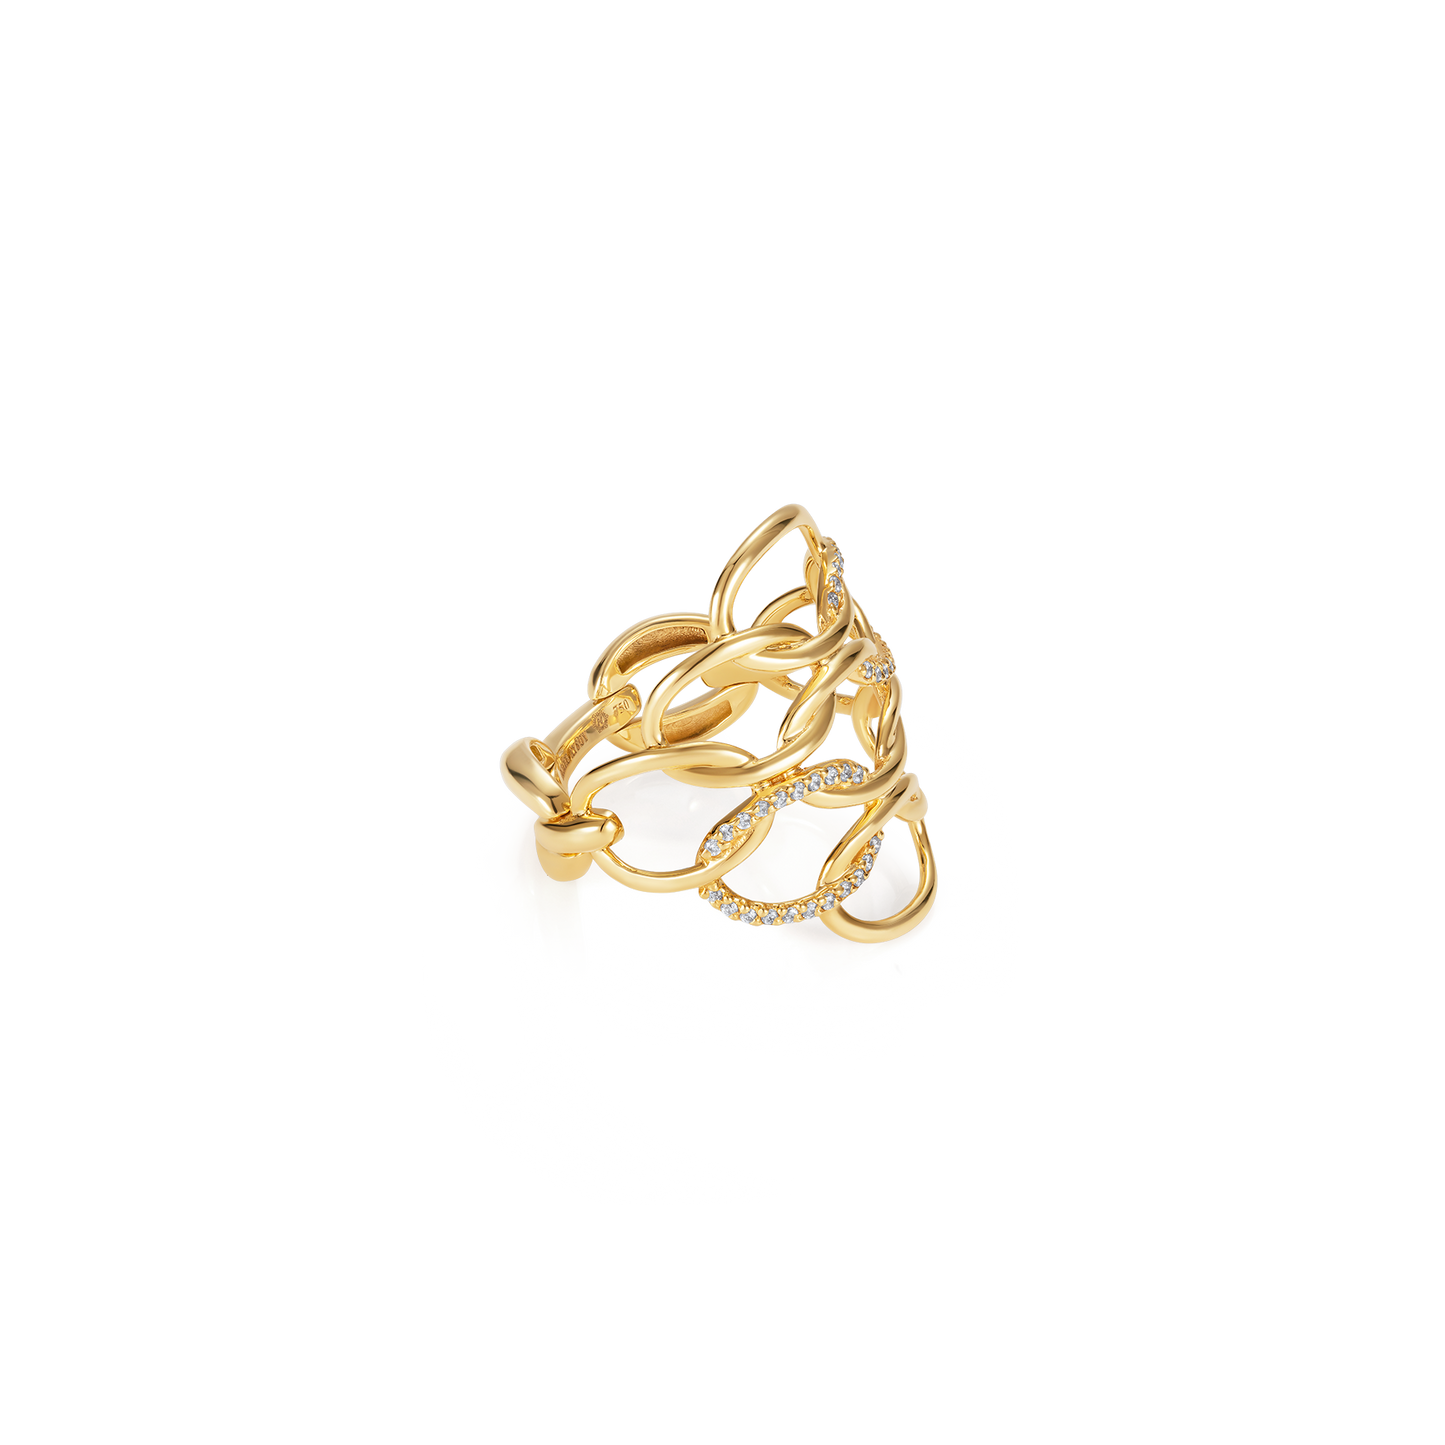 Catena Braided Ring